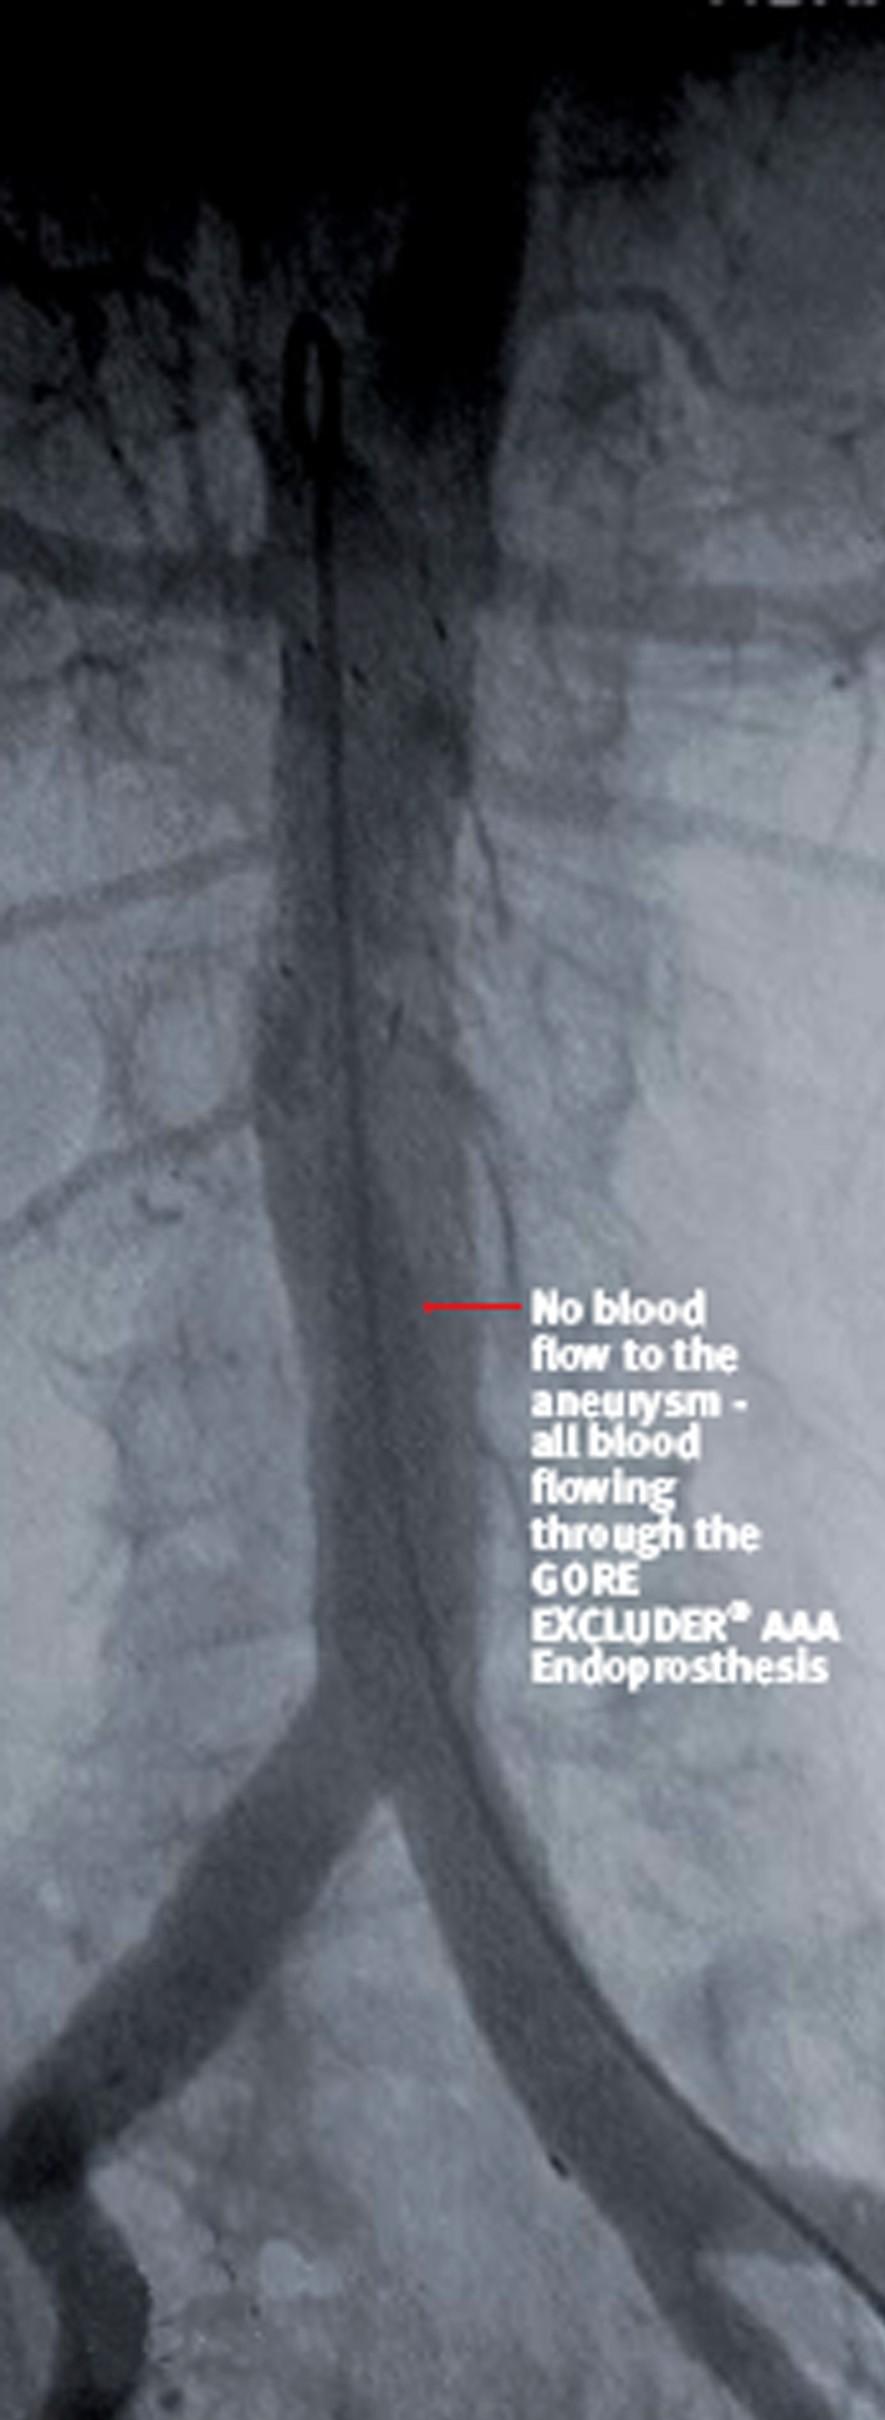 and below AAA in normal arterial segments Hemostatic seals